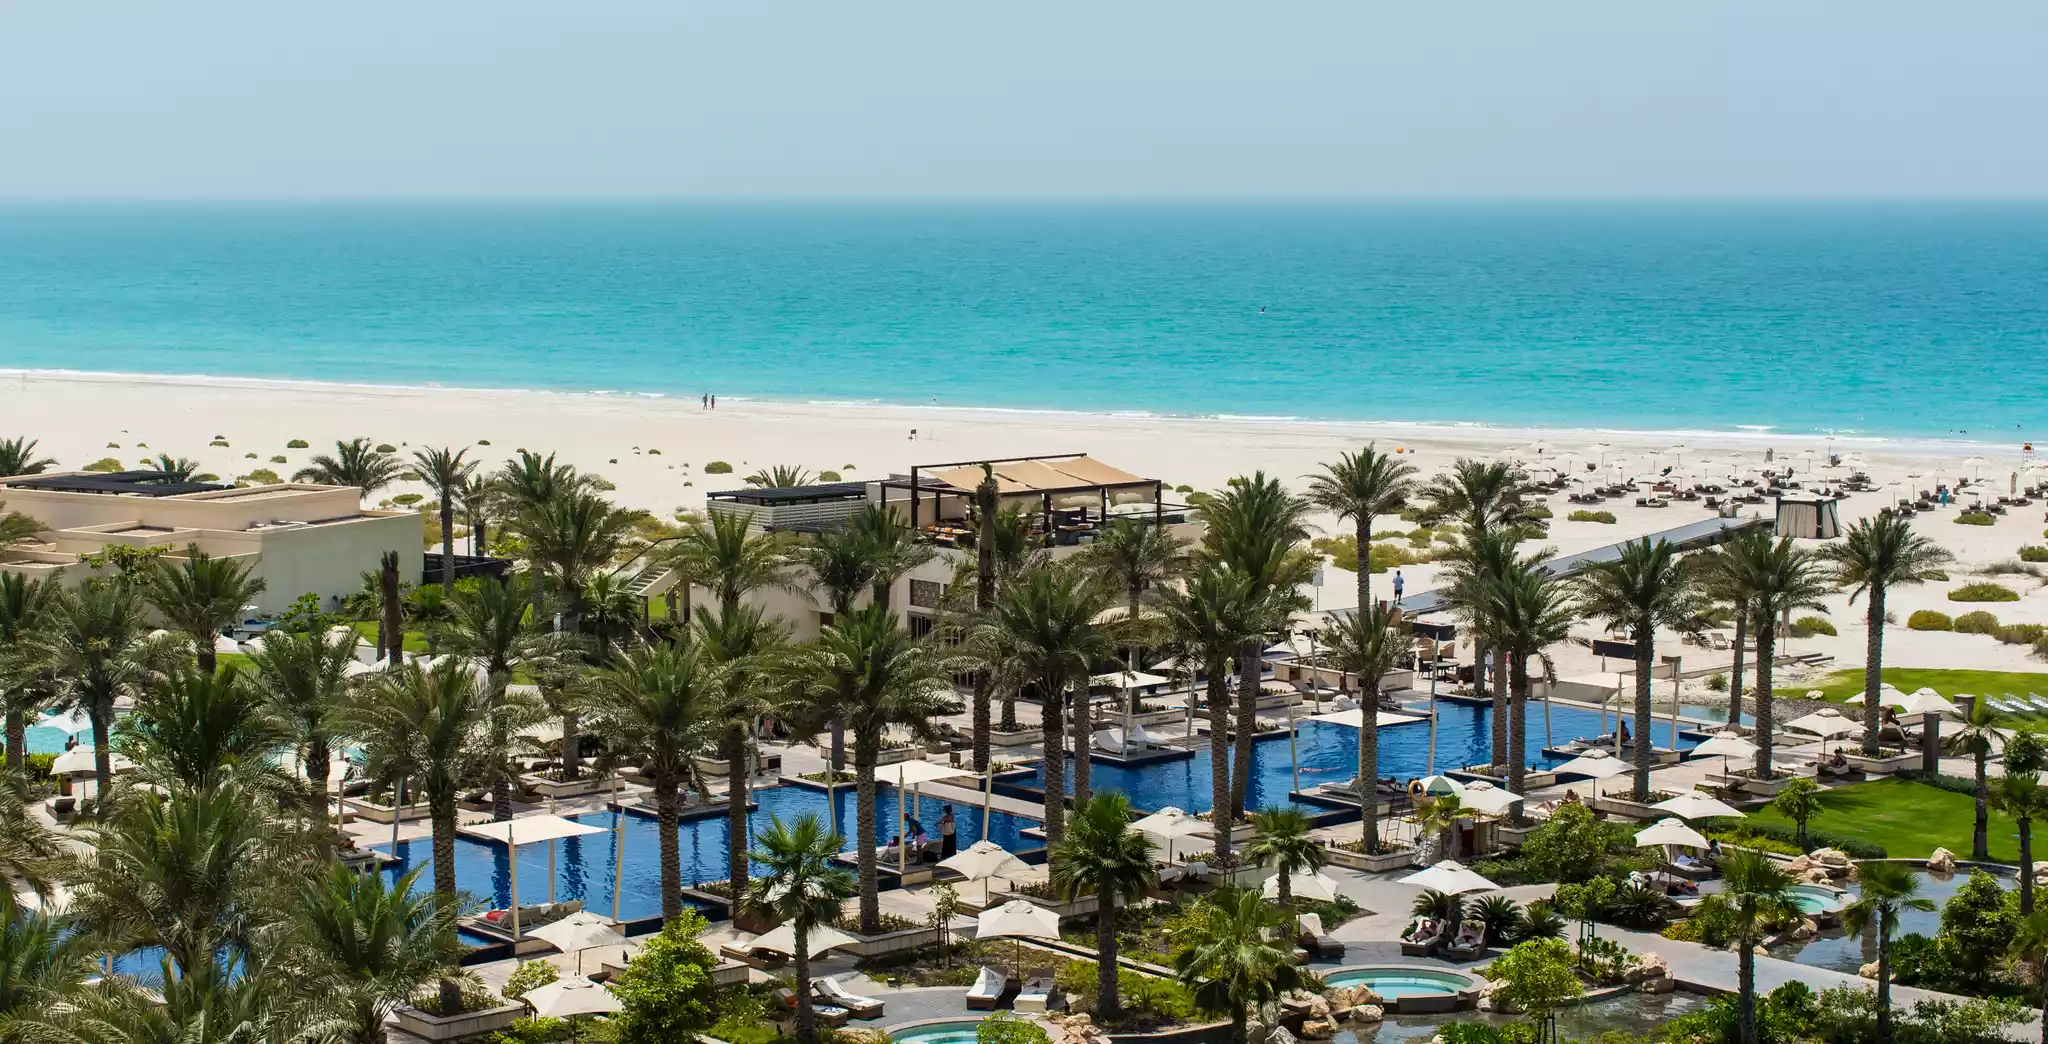 Park Hyatt Abu Dhabi Hotel and Villas 5*